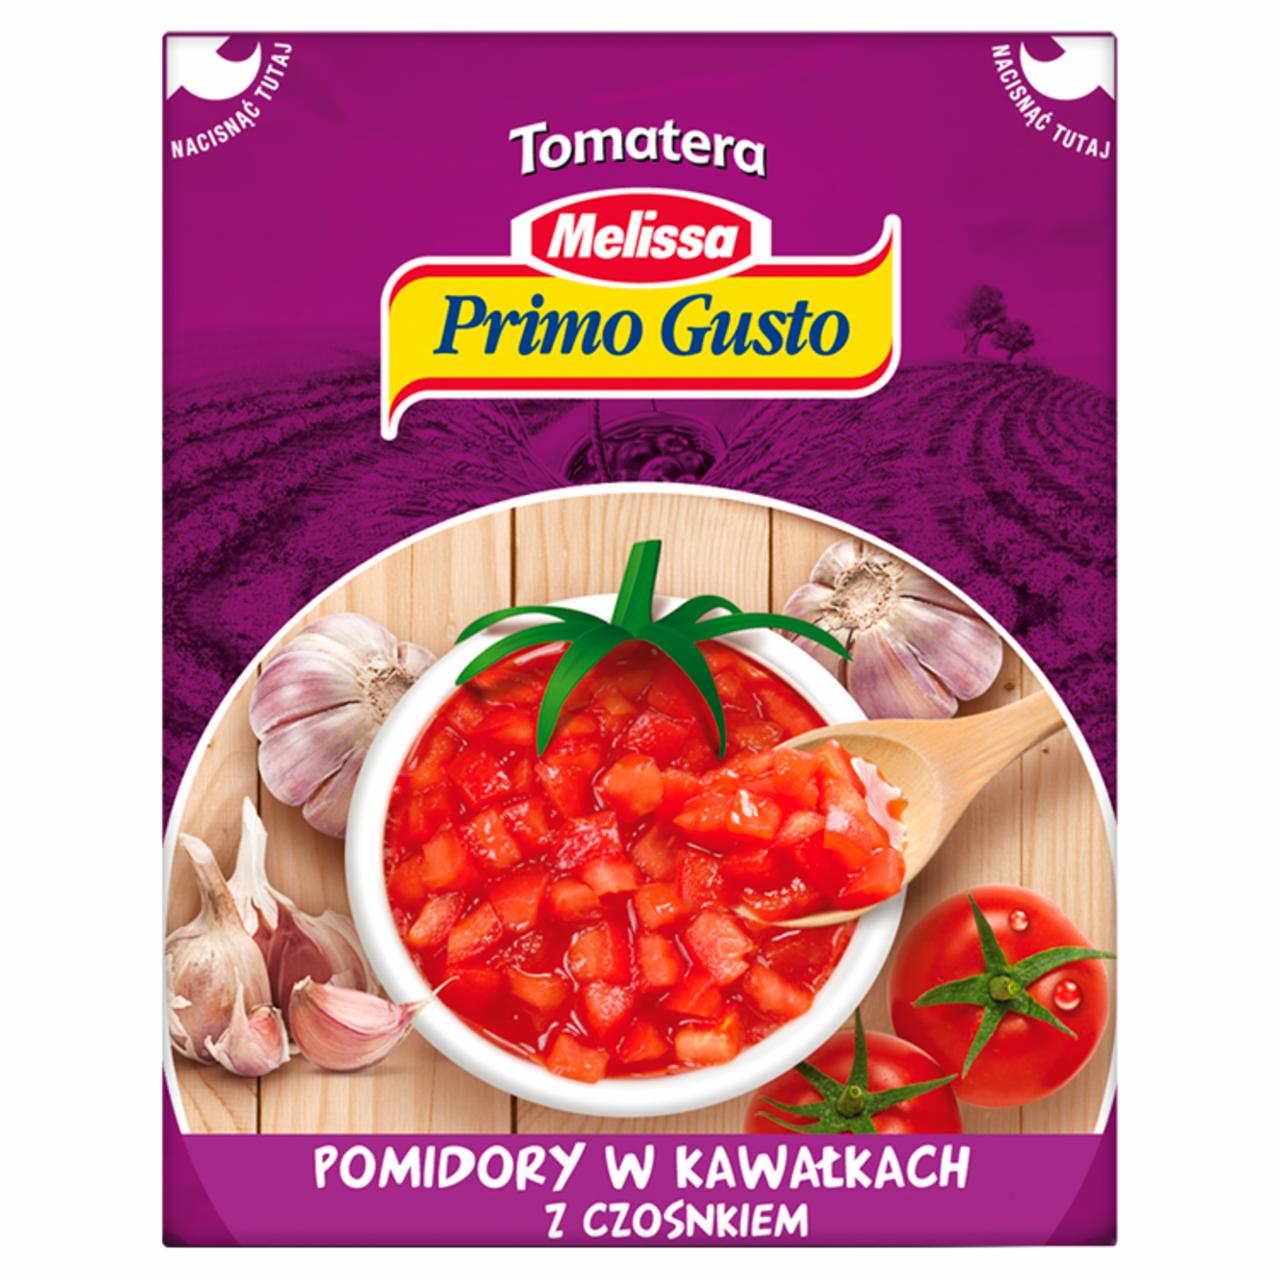 Zdjęcia - Primo Gusto Melissa Tomatera Pomidory w kawałkach z czosnkiem